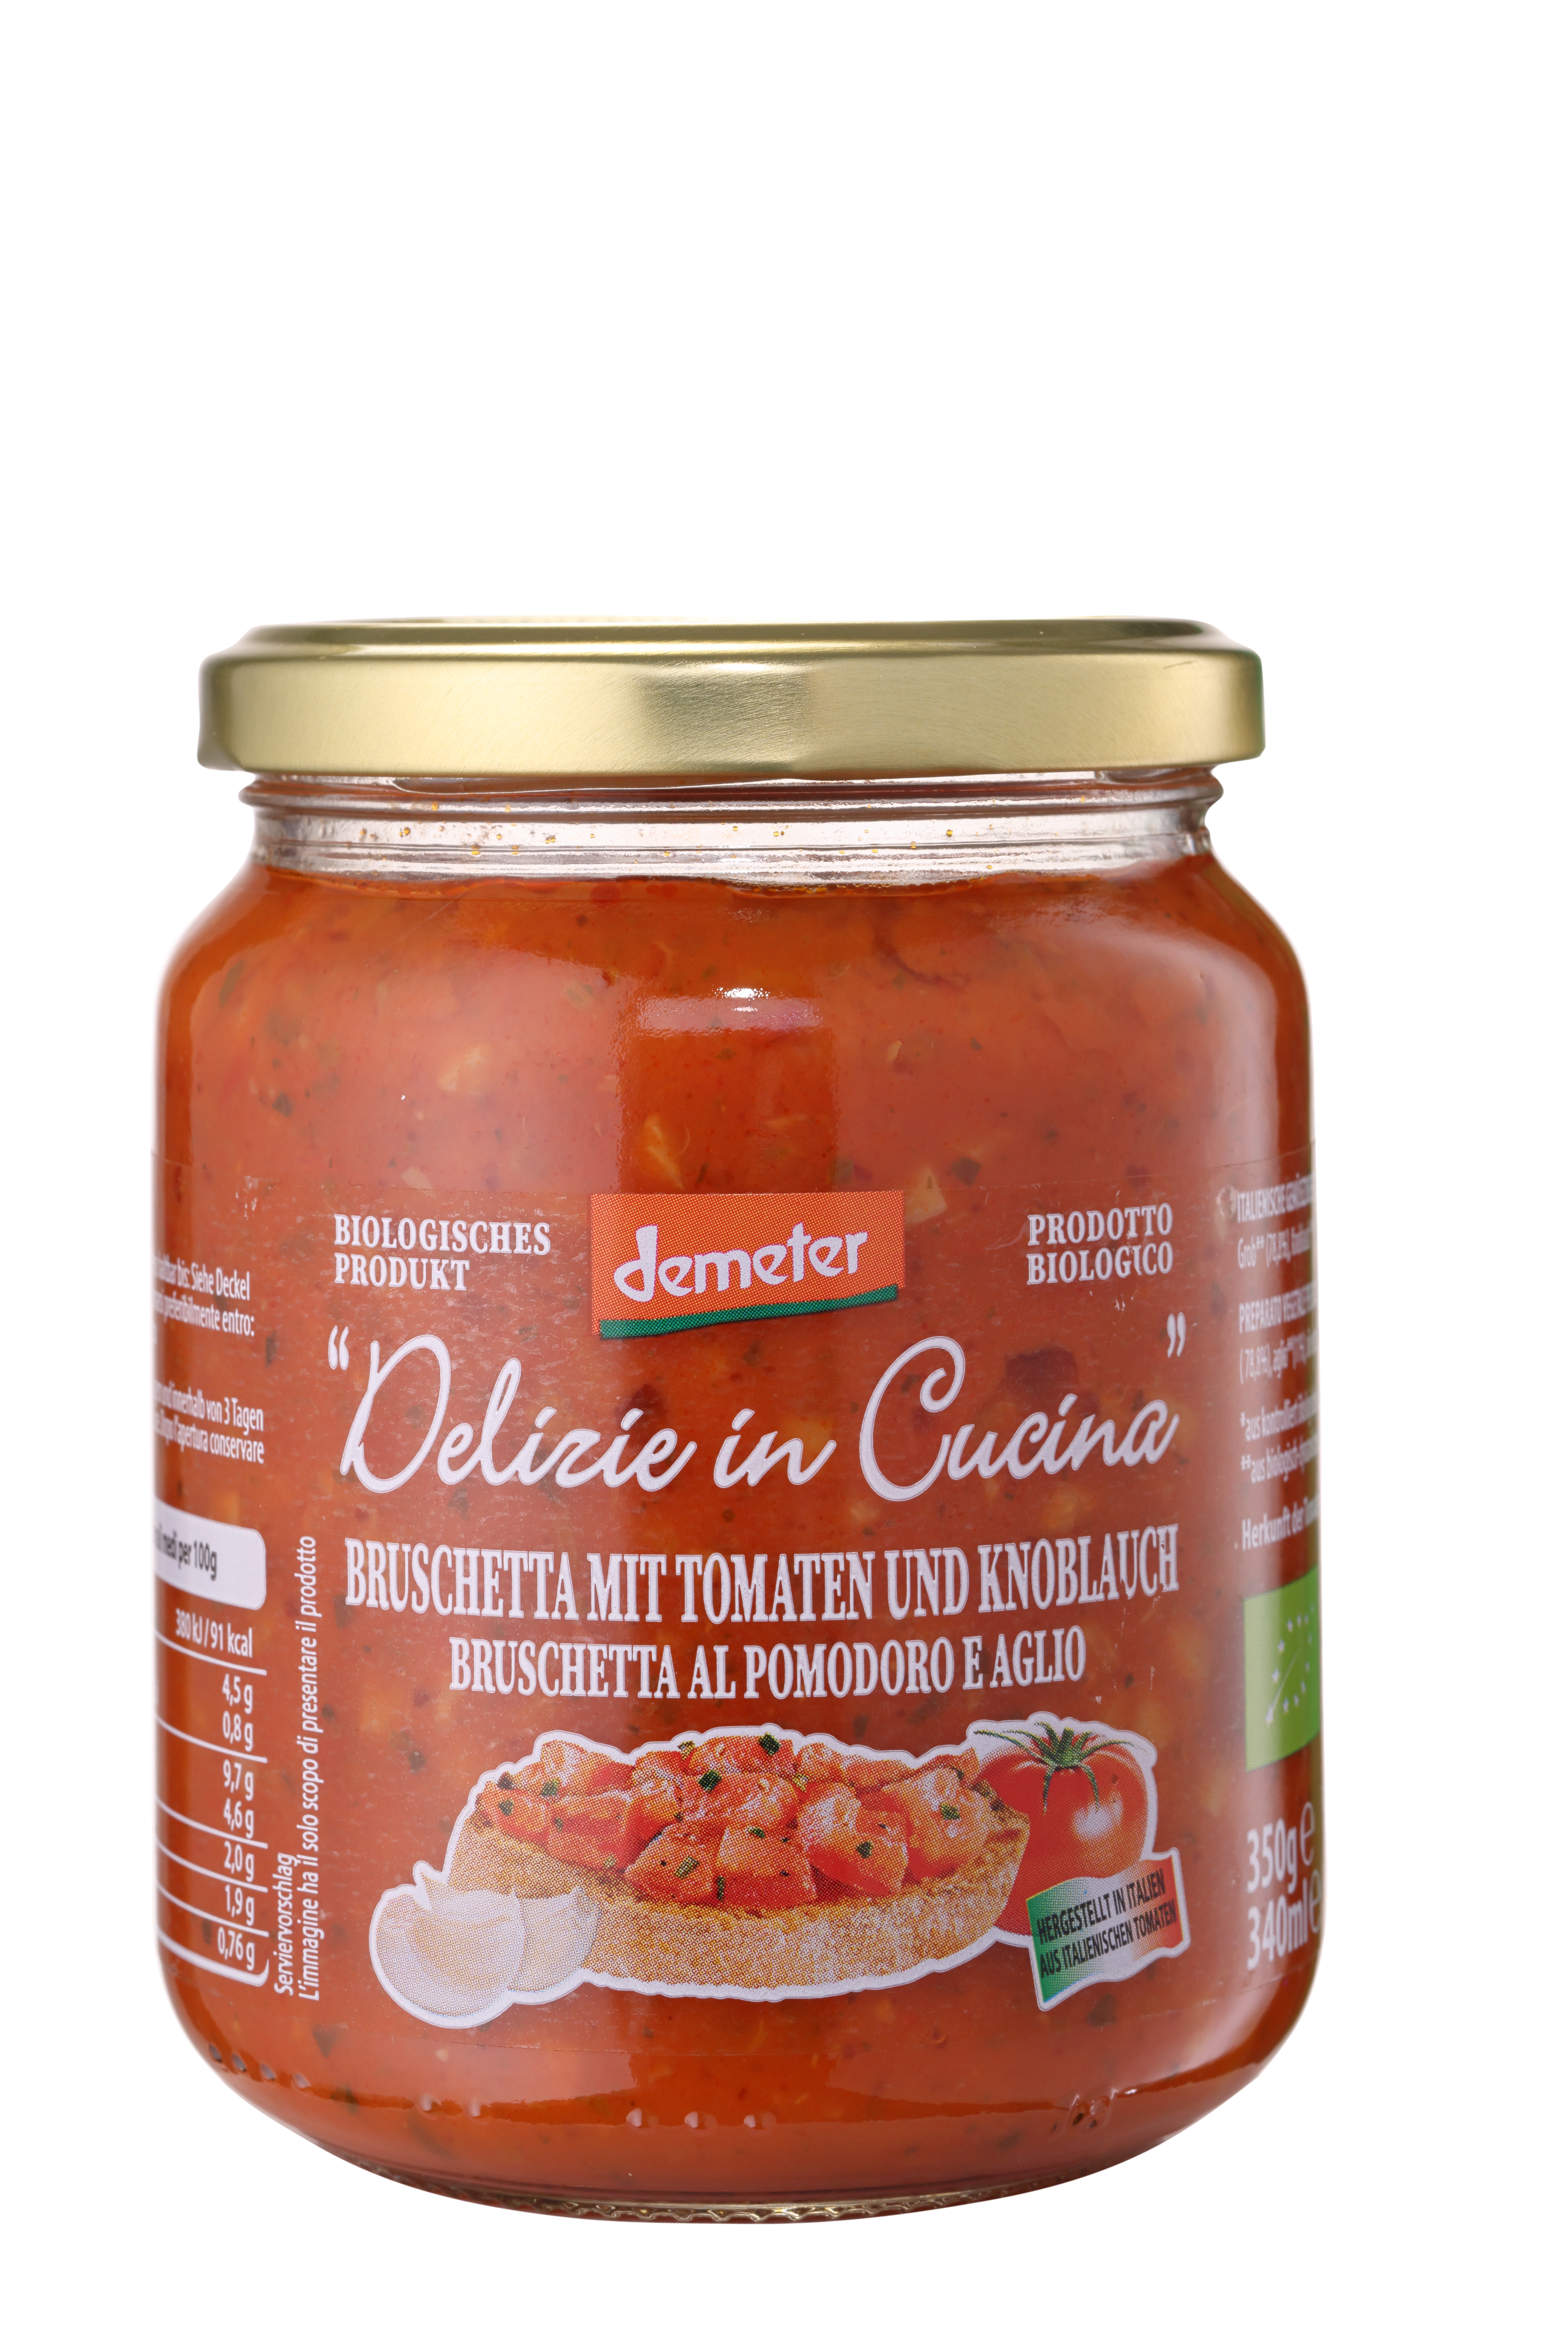 Delizie in Cucina, DEMETER Bruschetta frische Tomate und Knoblauch, 350 g DE-ÖKO